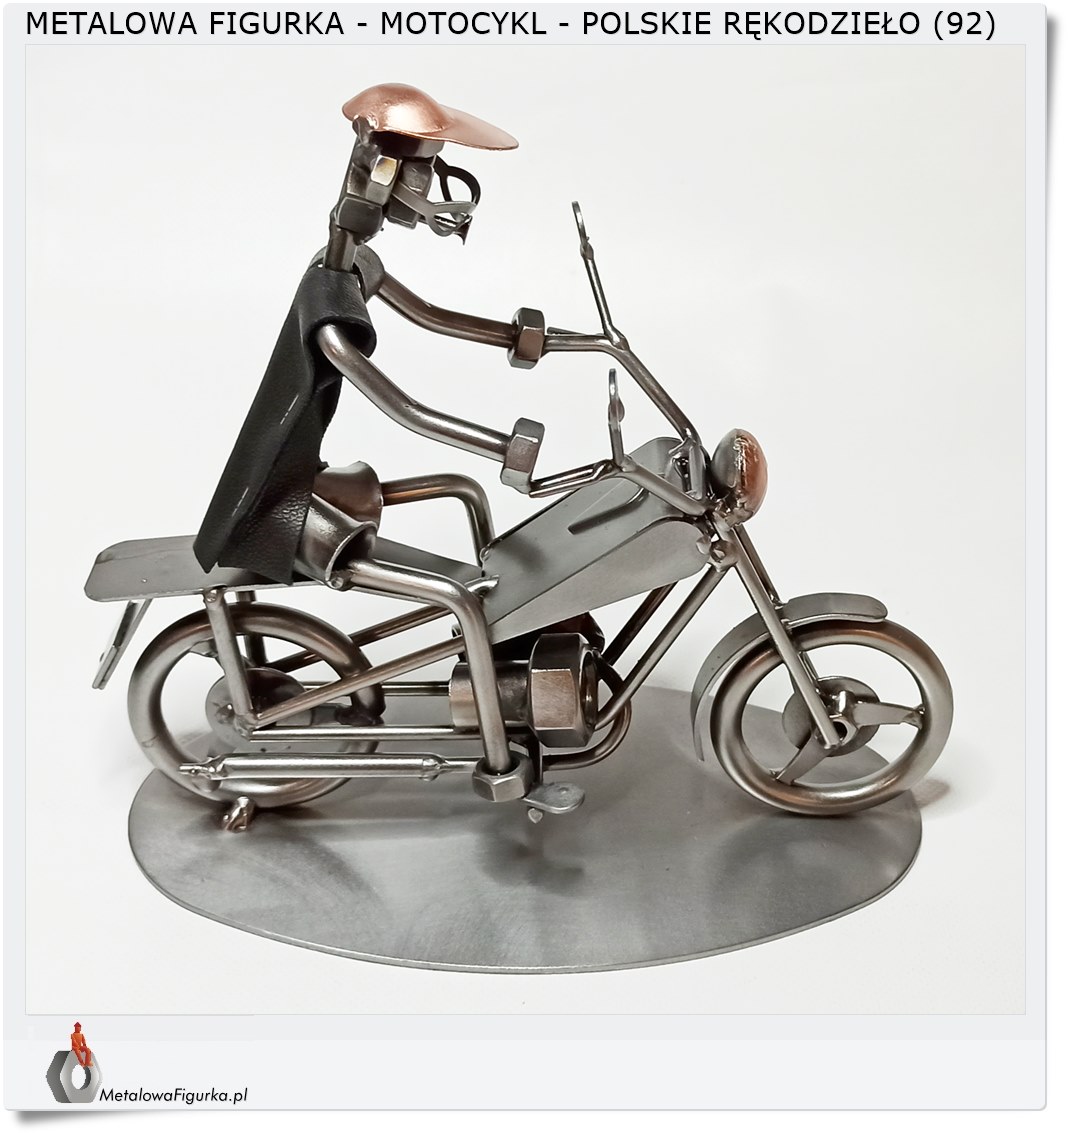 Motocykl metalowa figurka Rękodzieło